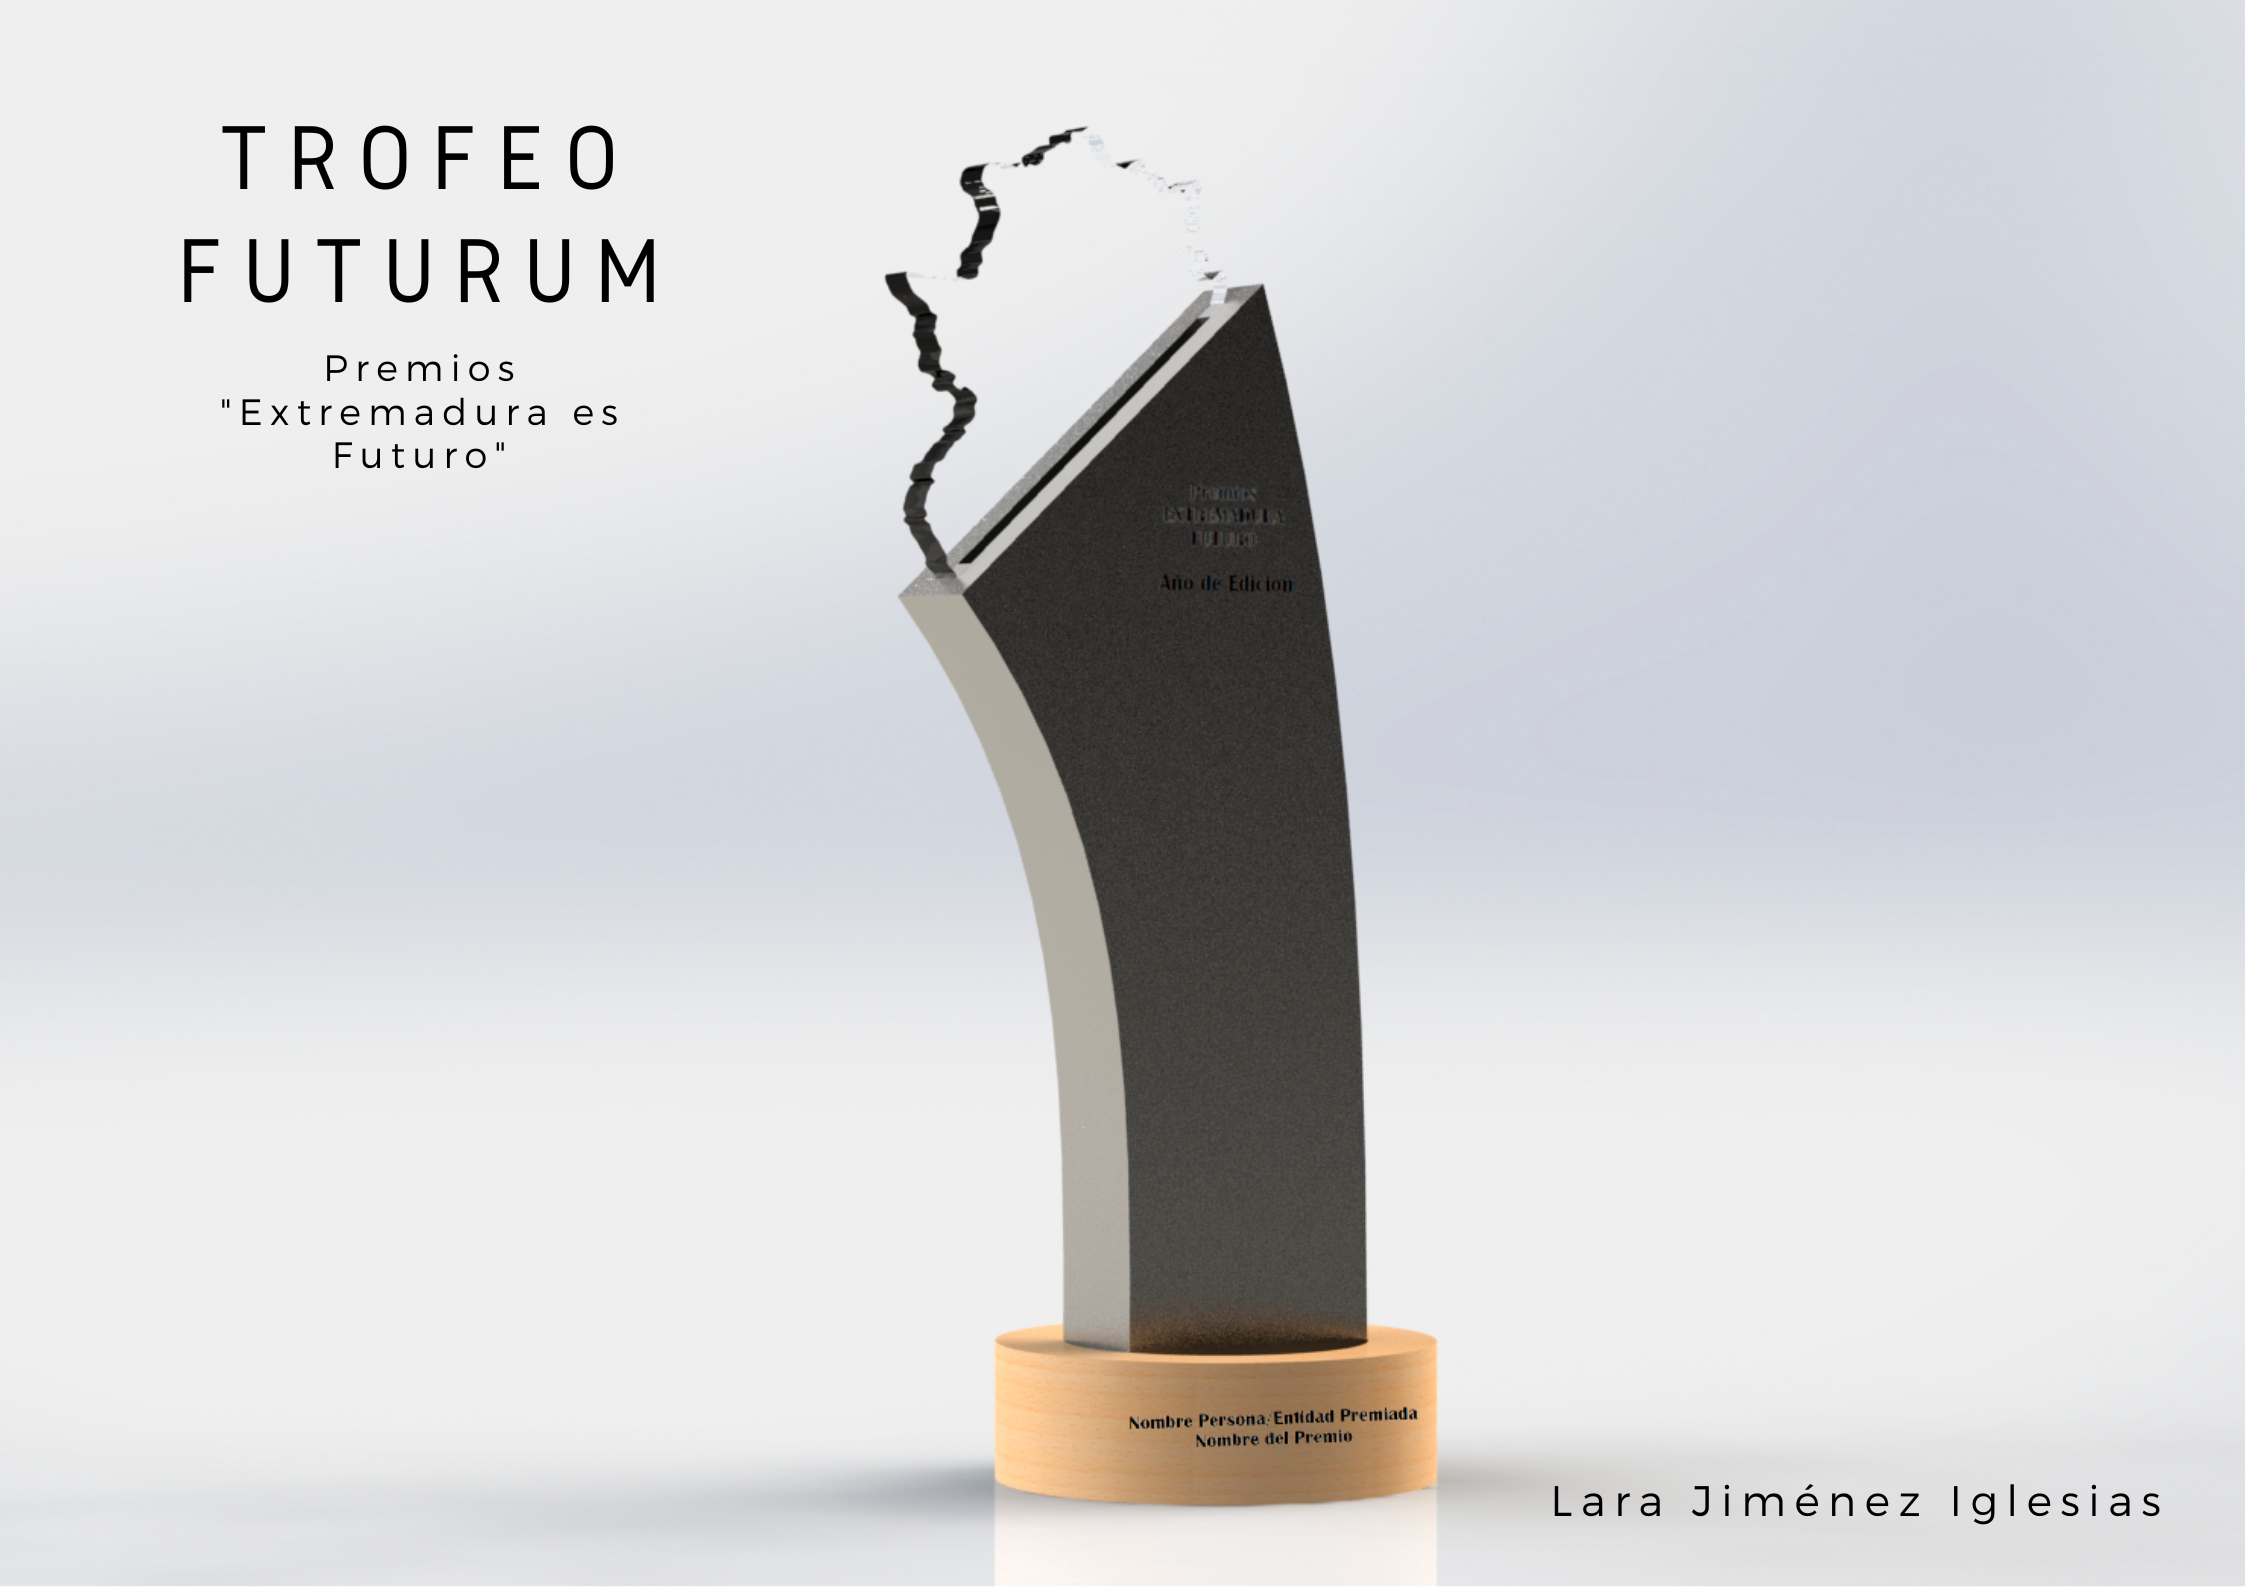 Trofeo Futurum